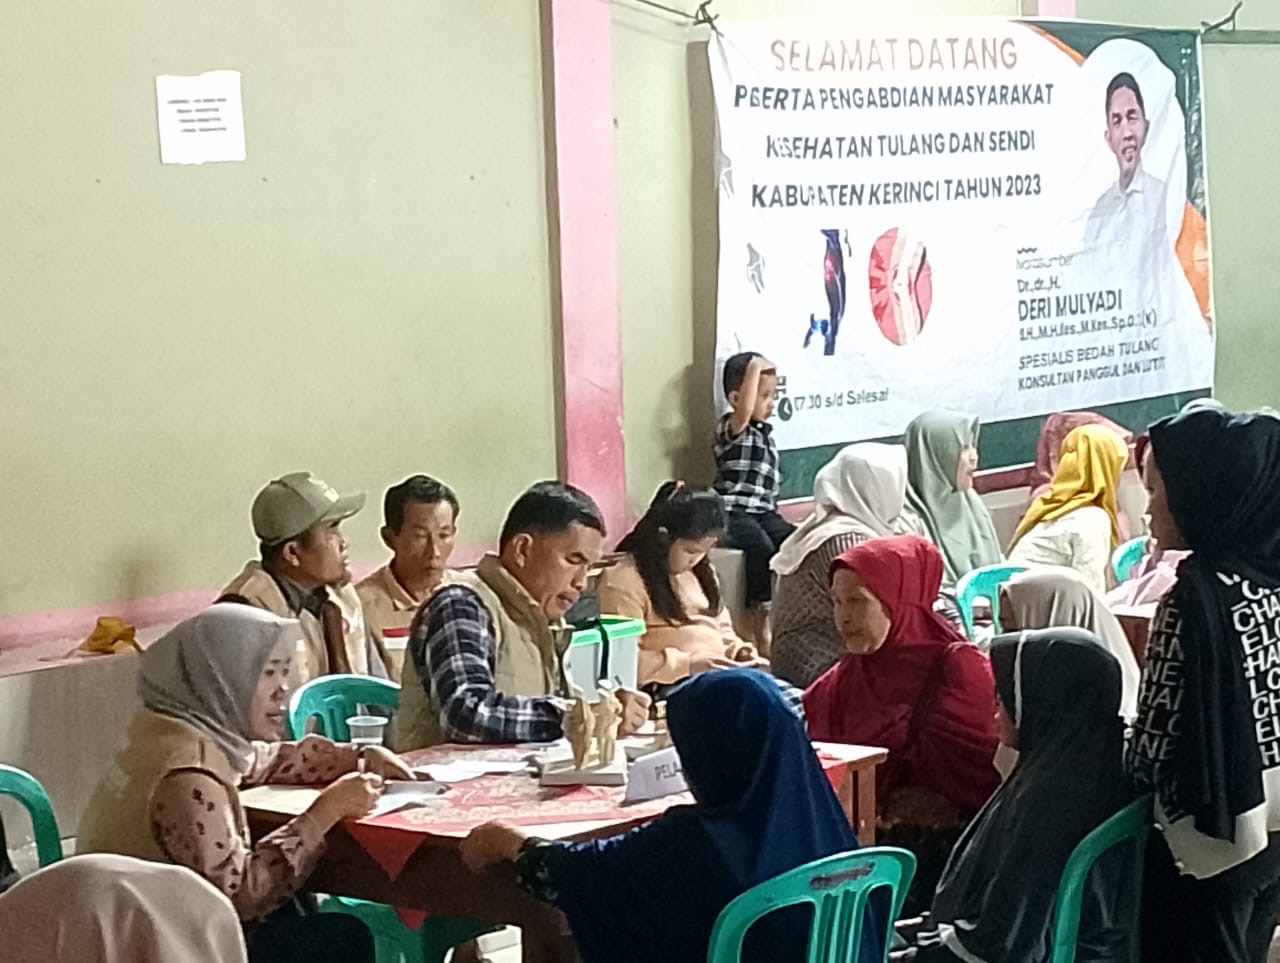 Giliran Warga 5 Desa Tanjung Pauh Dapat Pelayanan Kesehatan Gratis dr.Deri Mulyadi